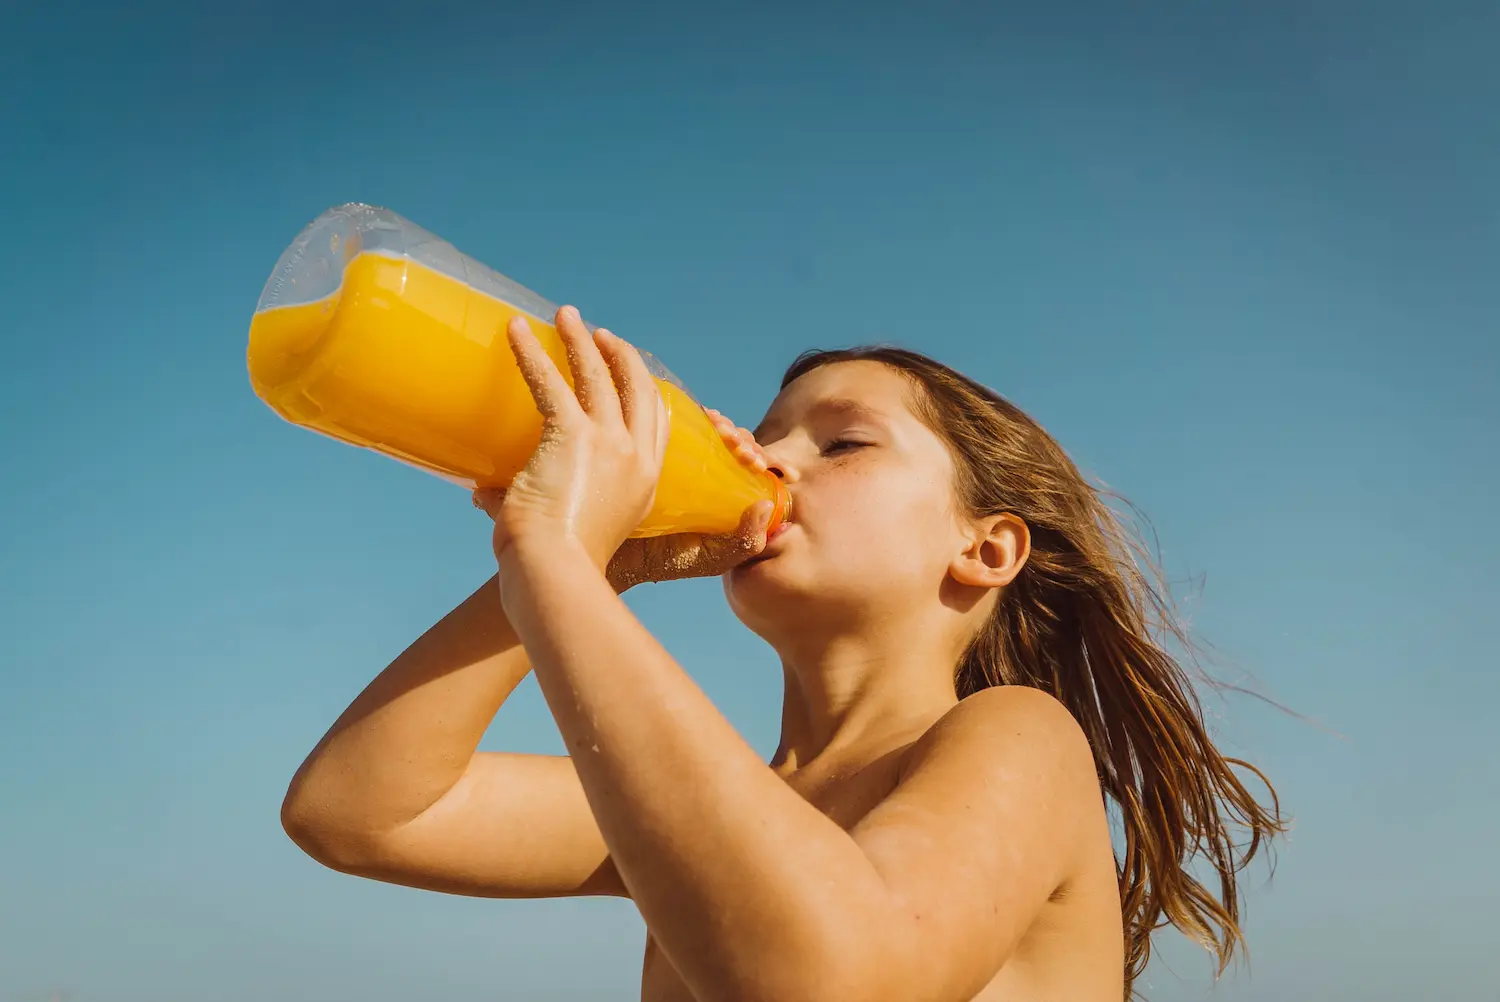 Bambina che beve succo d'arancia